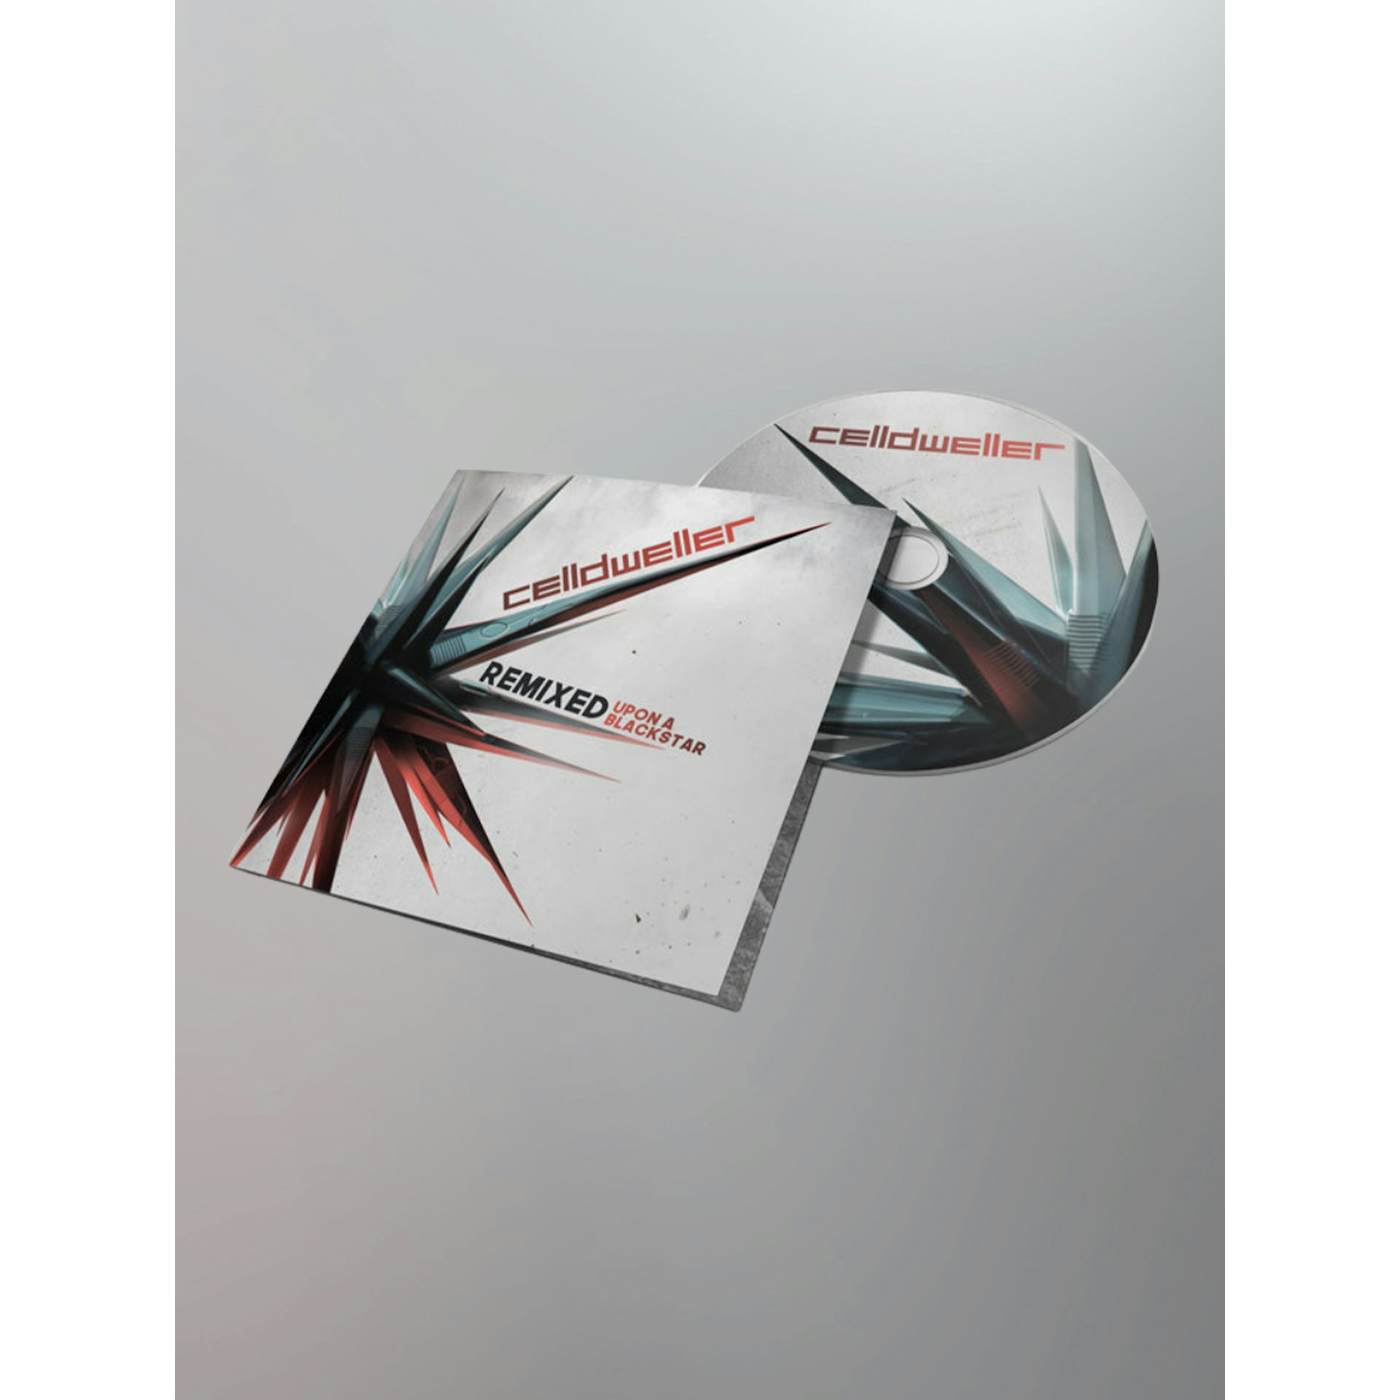 Celldweller - Remixed Upon A Blackstar CD